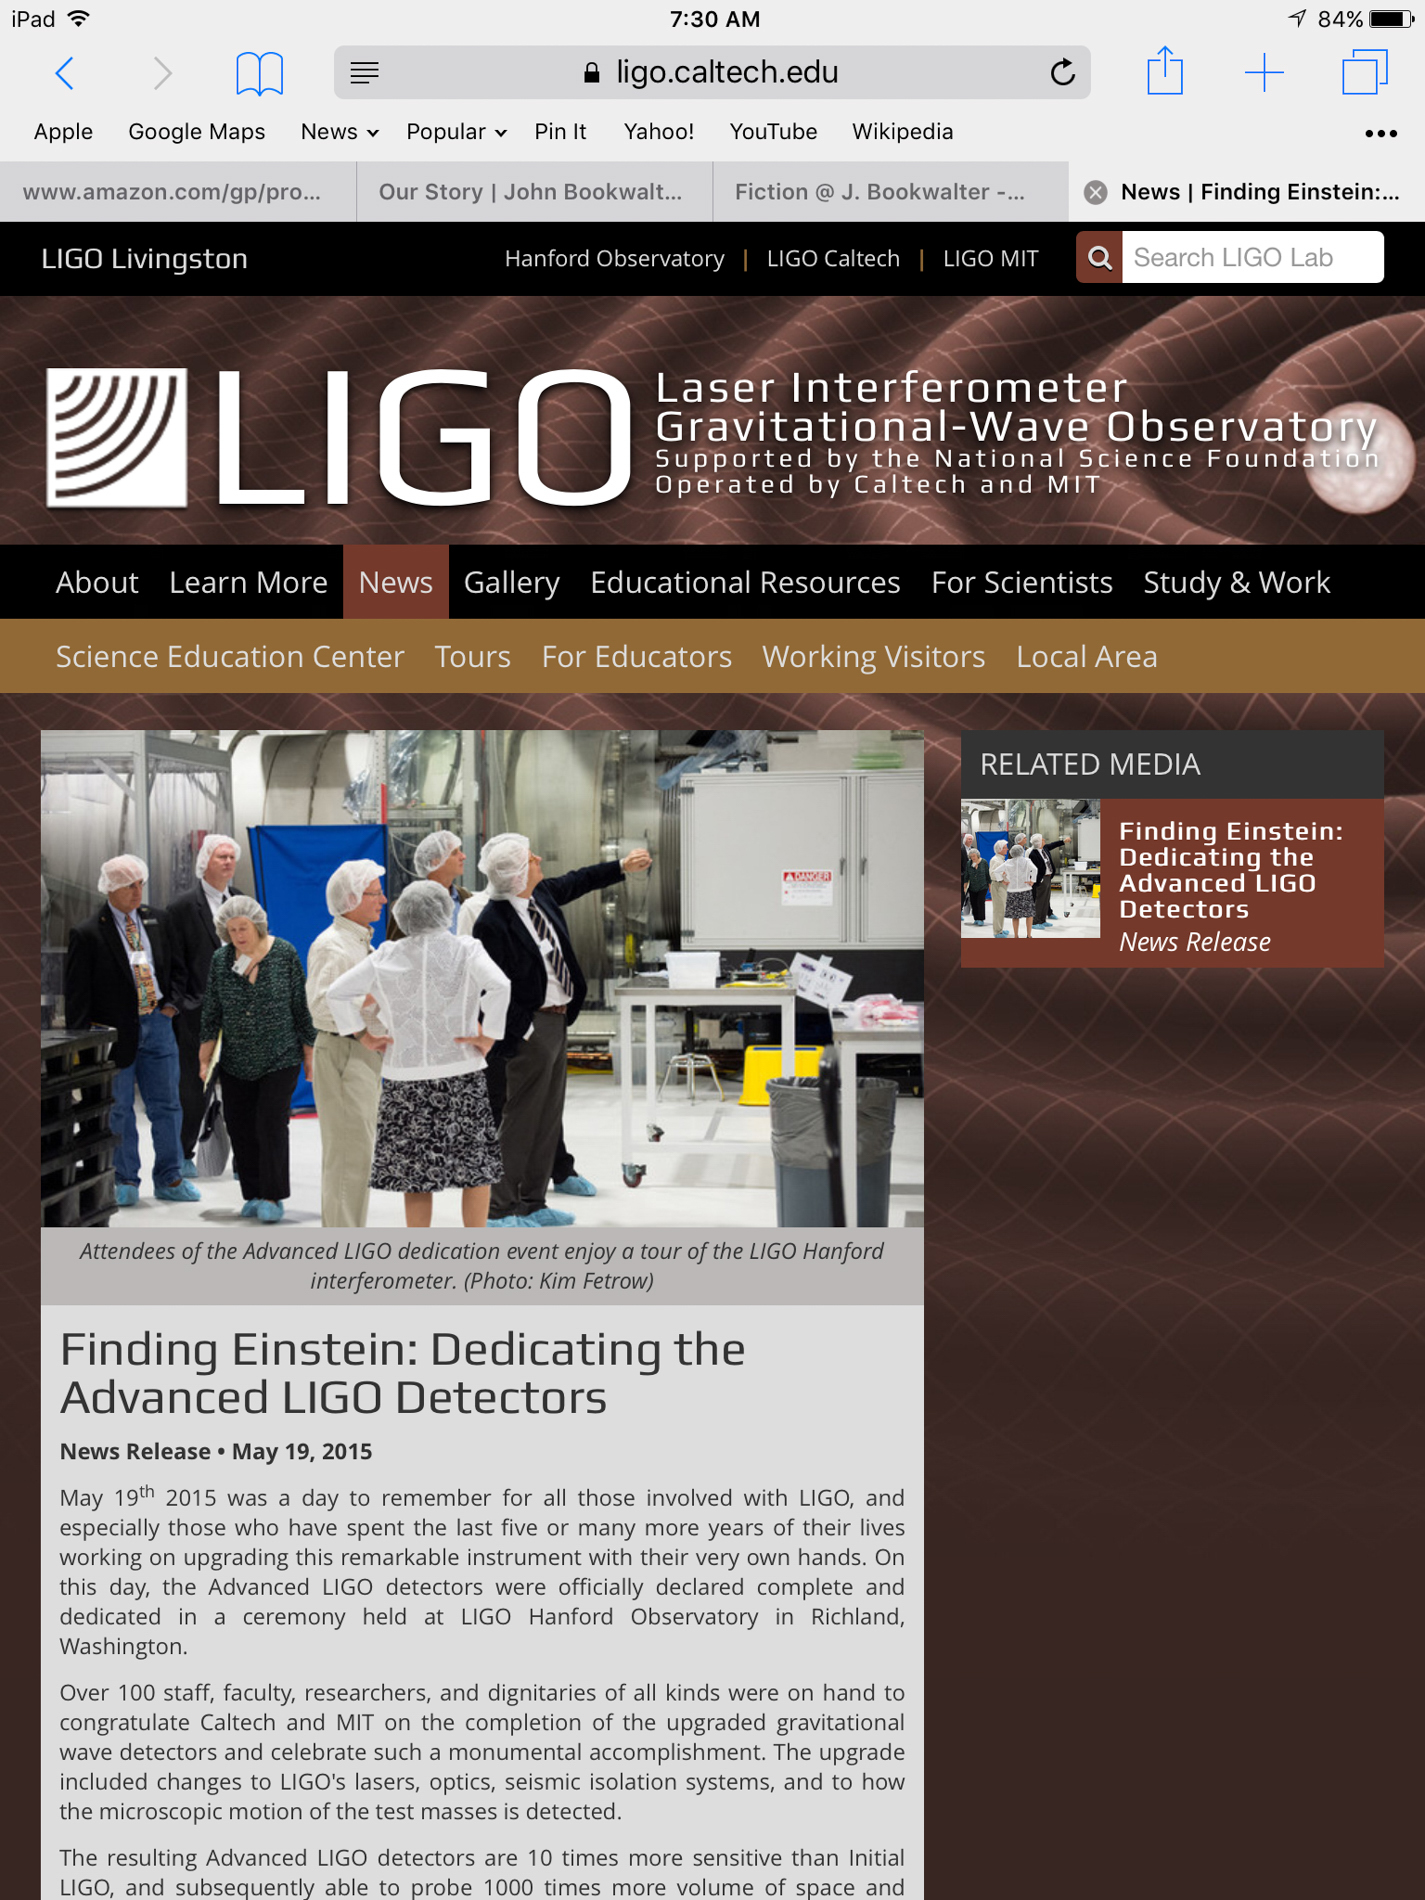 LIGO My EGGO